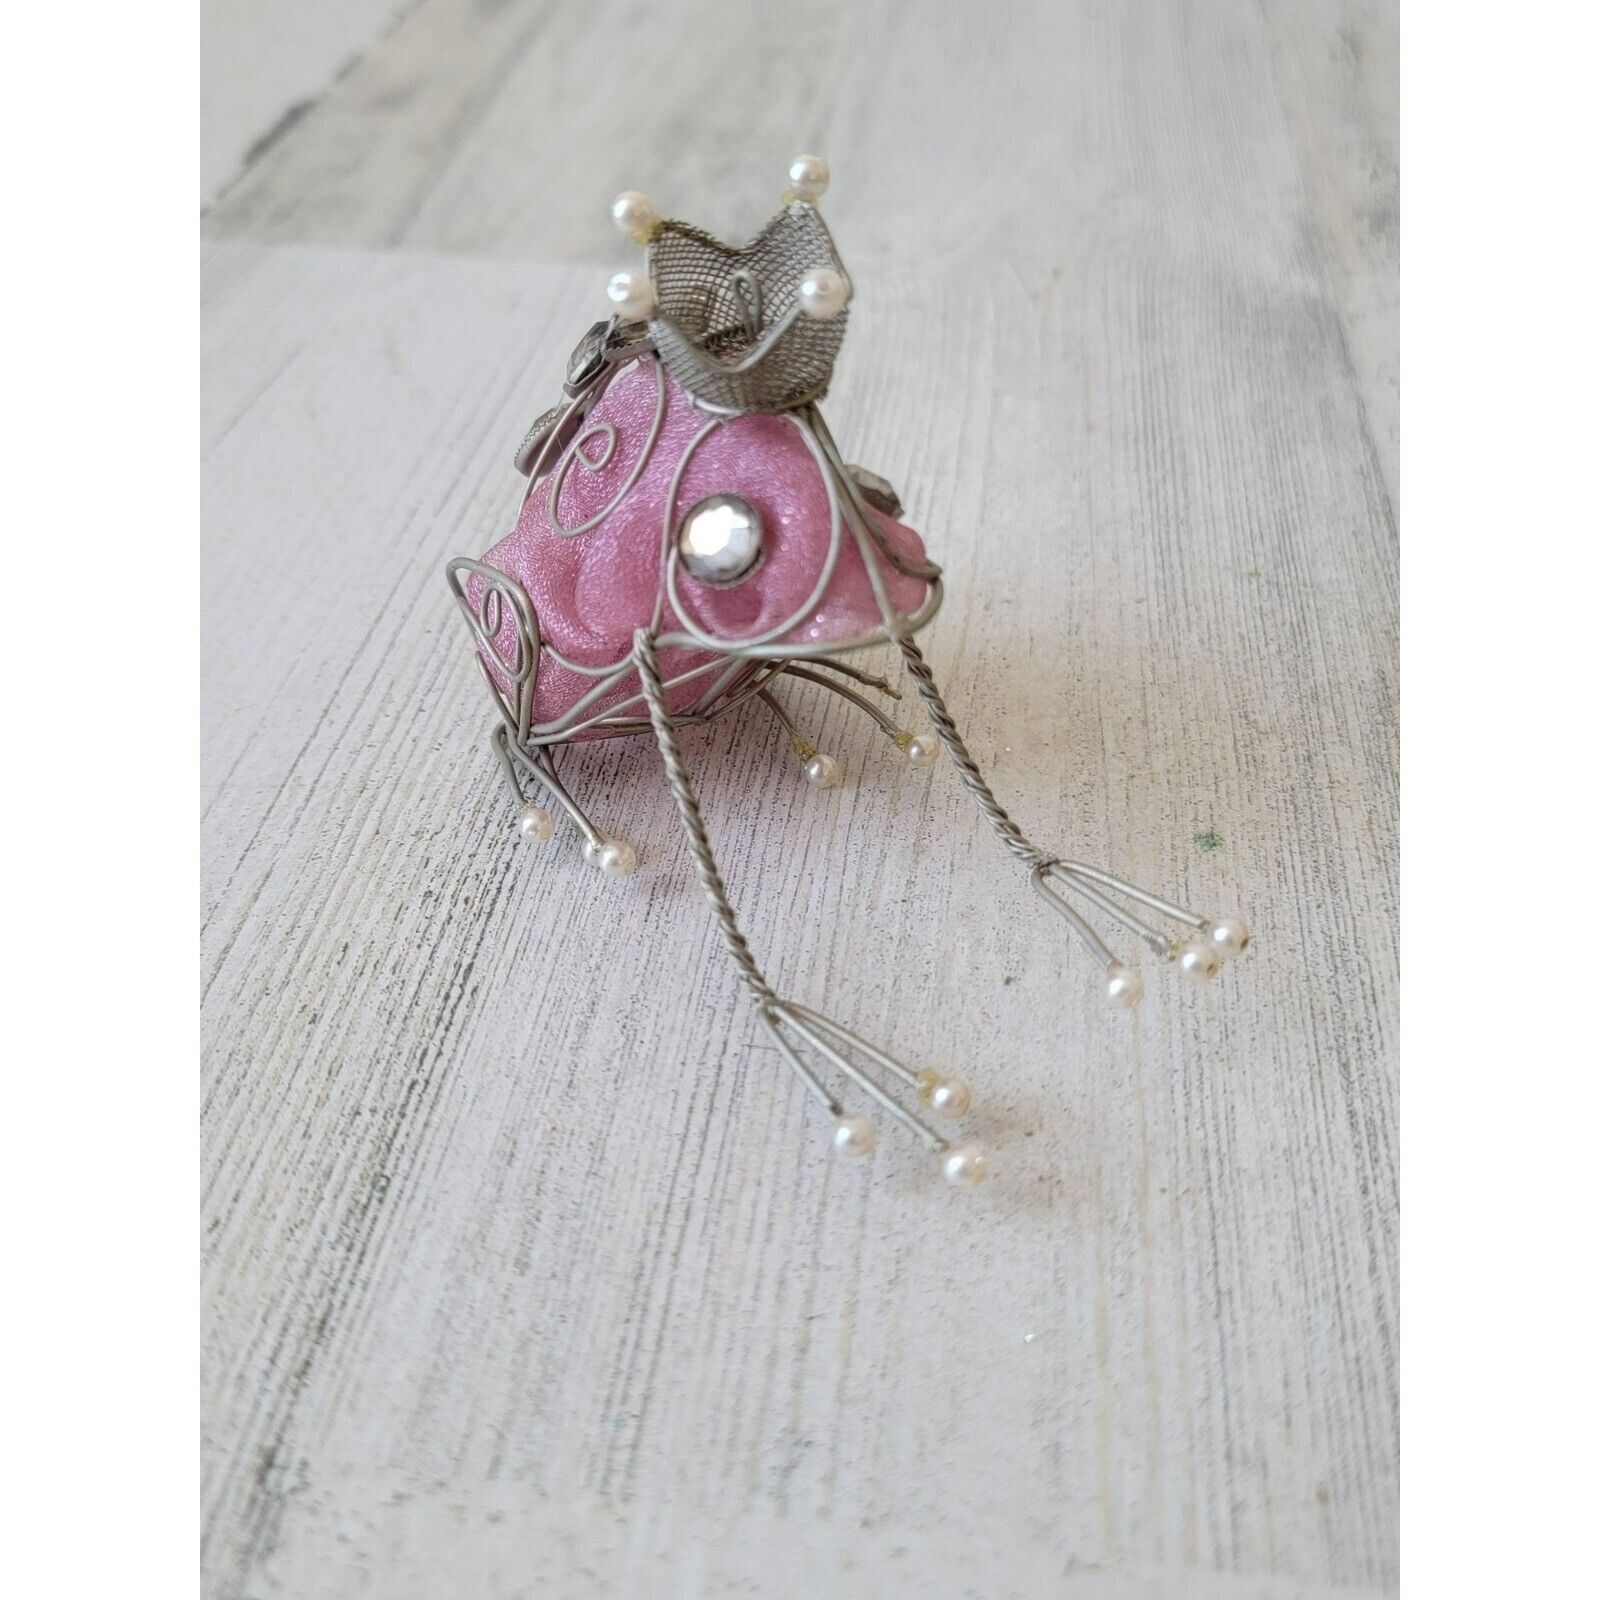 Unique Princess Frog Crown pink mini figure decor